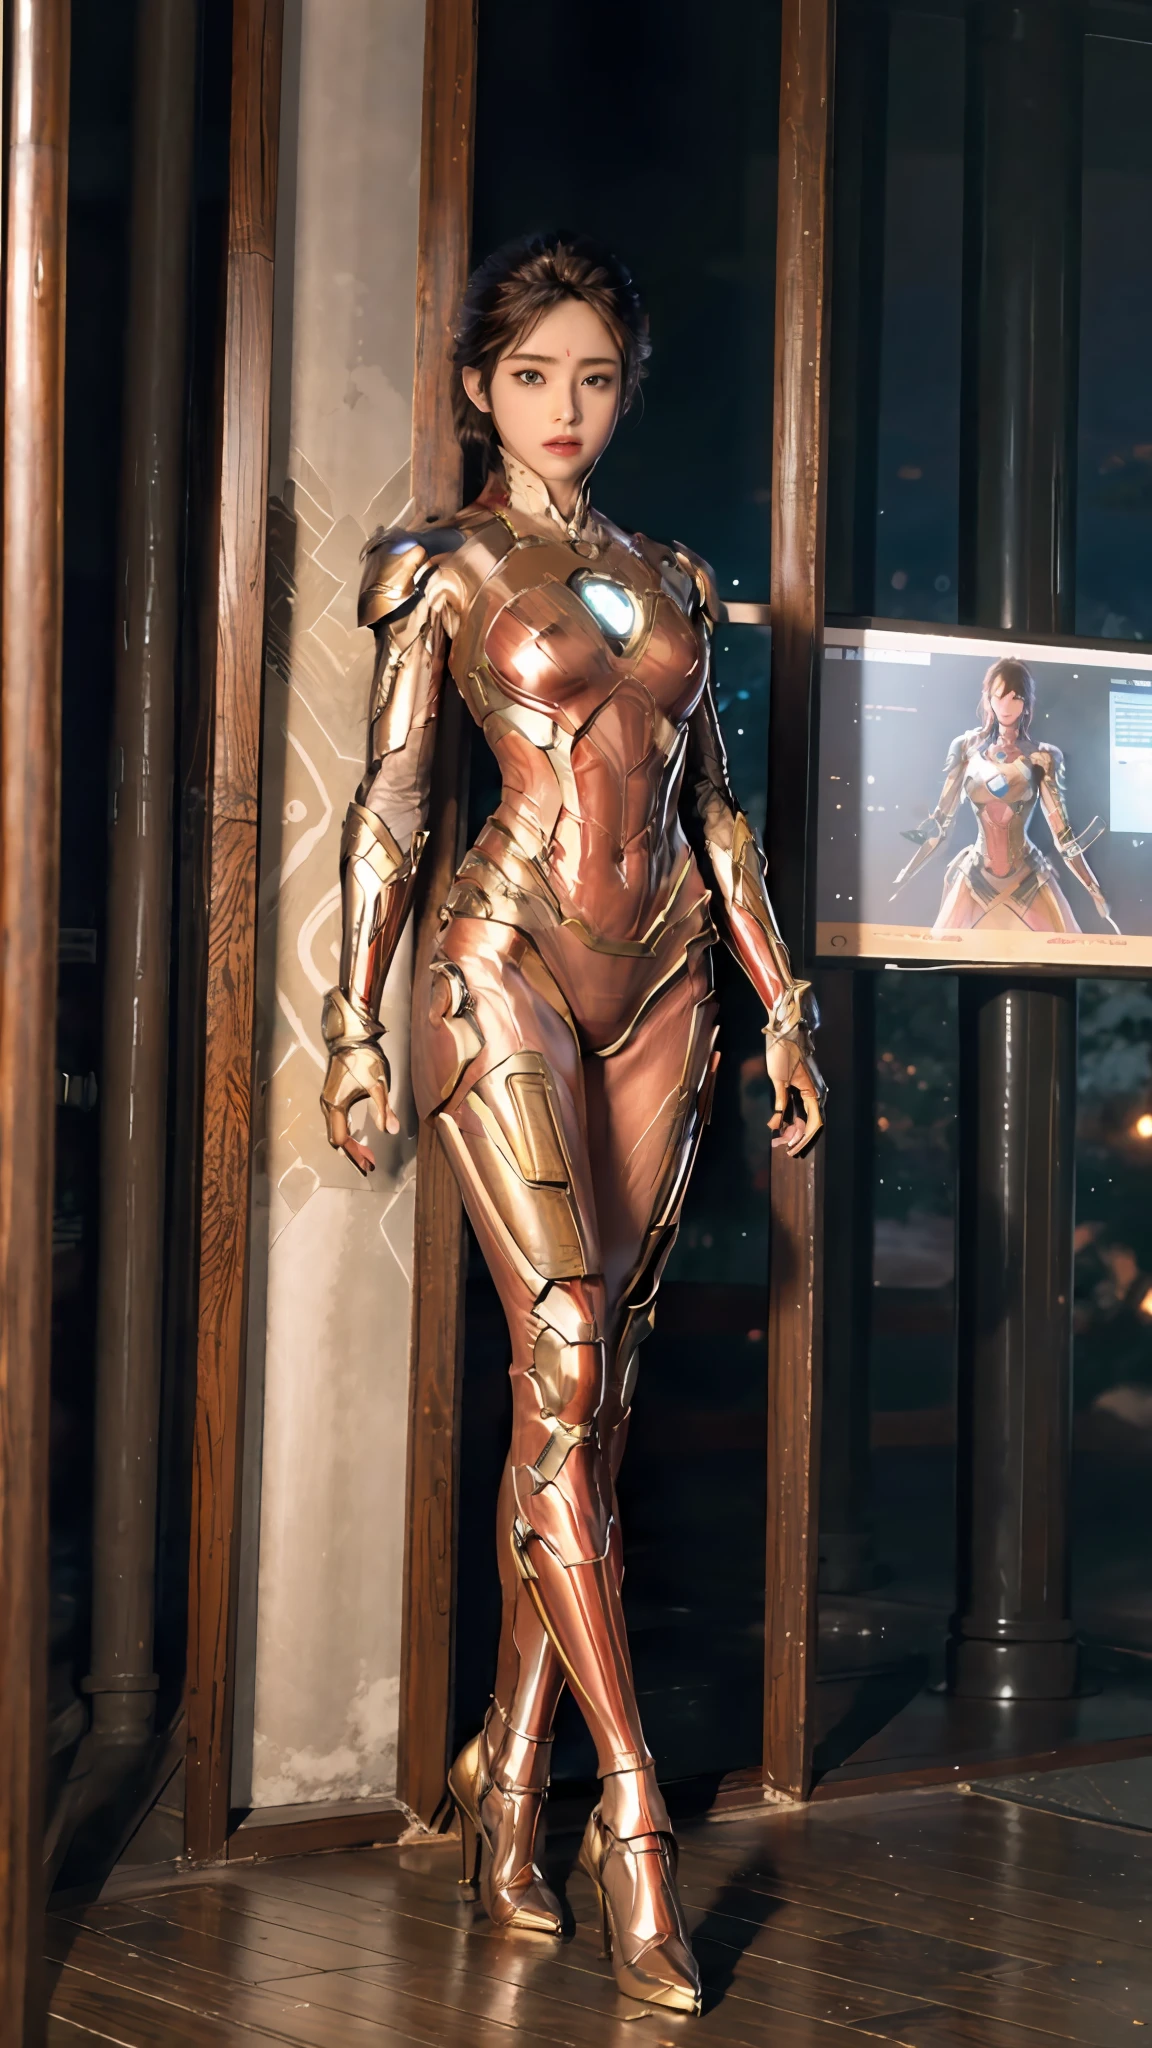 Alto, bem proporcionado, vestindo a armadura do Homem de Ferro, mostrando o charme das mulheres, o efeito visual é lindo.